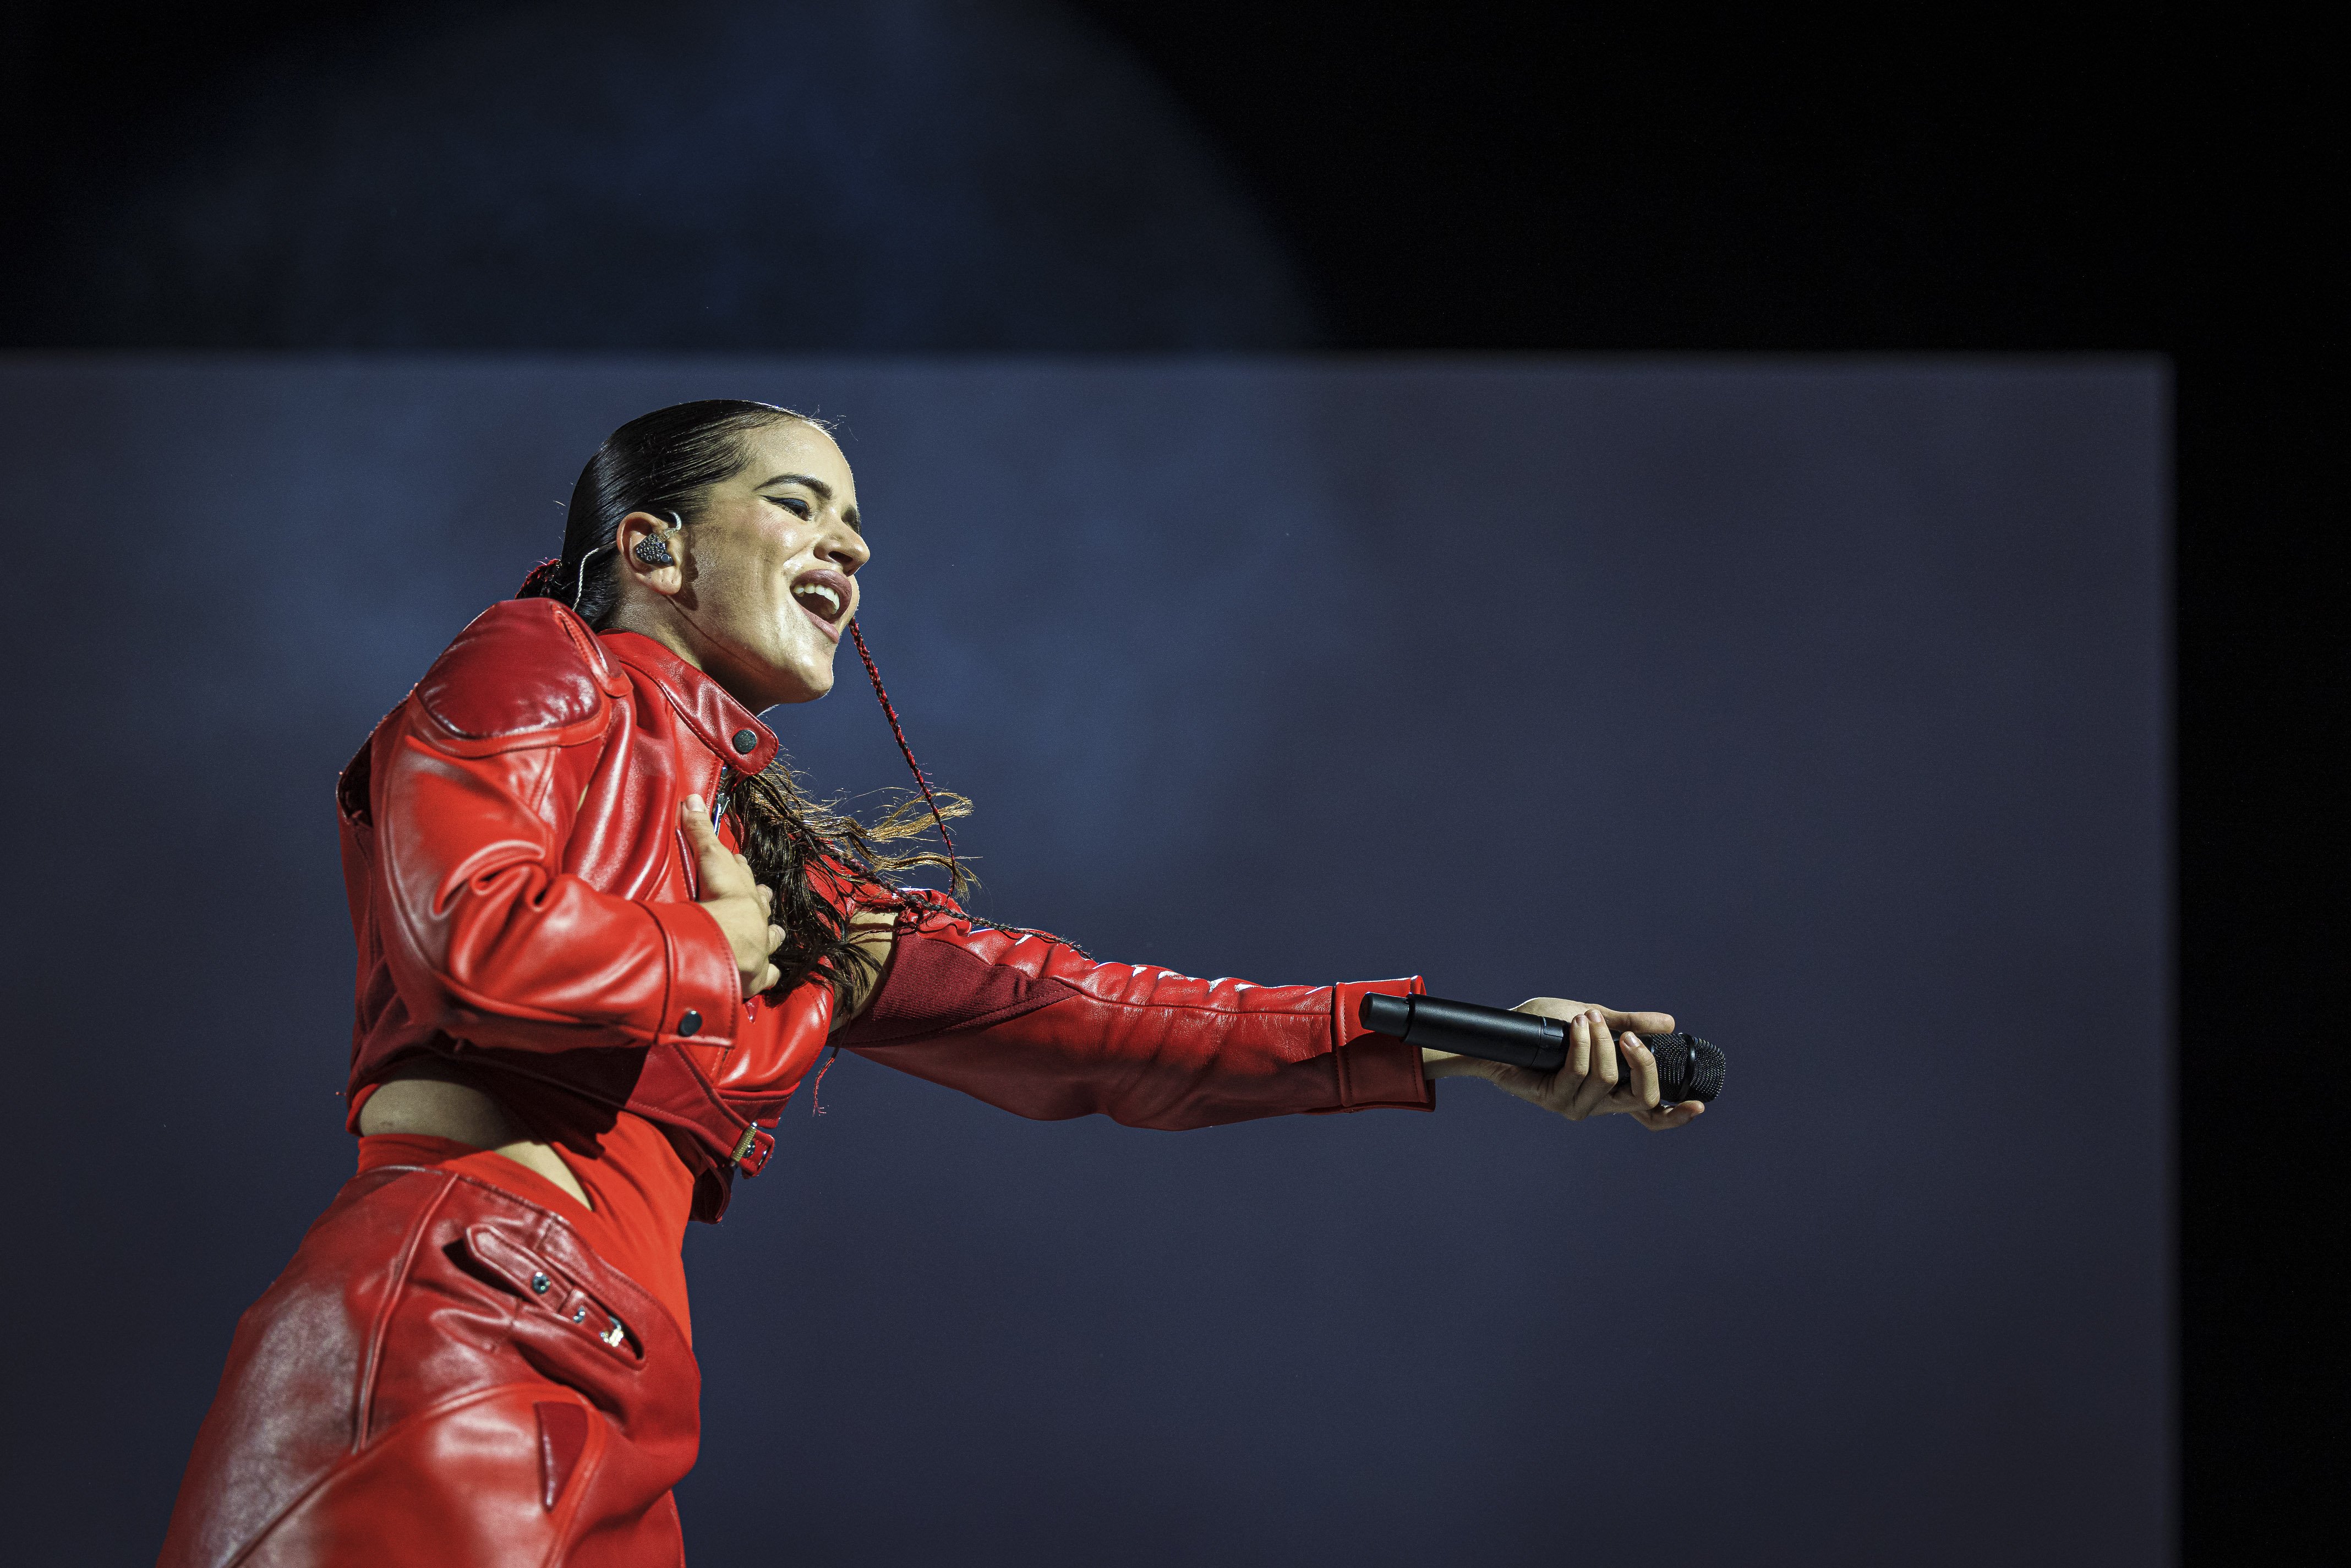 'El mal querer' de Rosalía, desè millor àlbum conceptual de la història segons 'Rolling Stone'